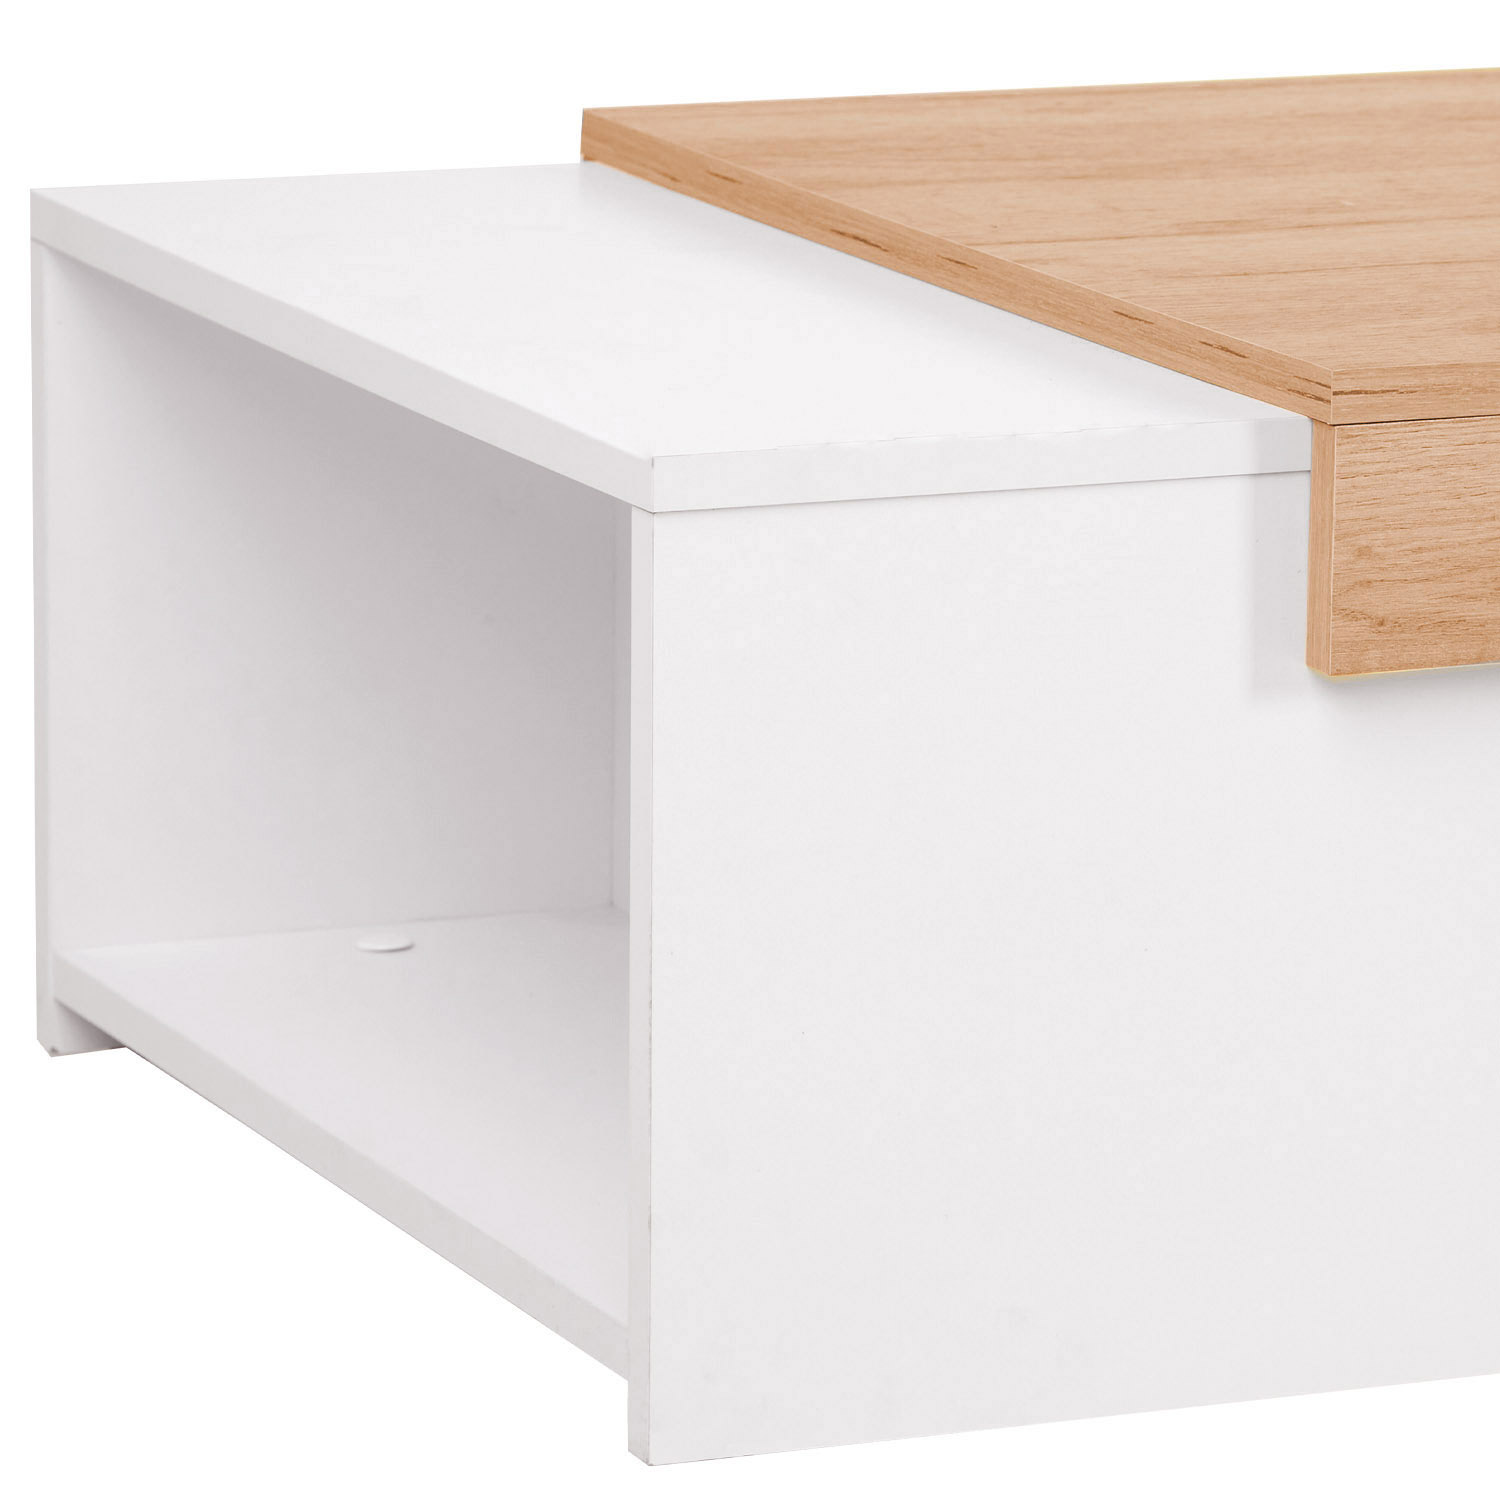 Table de salon Table basse Chêne Blanc Table de salon Naturelle Table d'appoint en bois Moderne